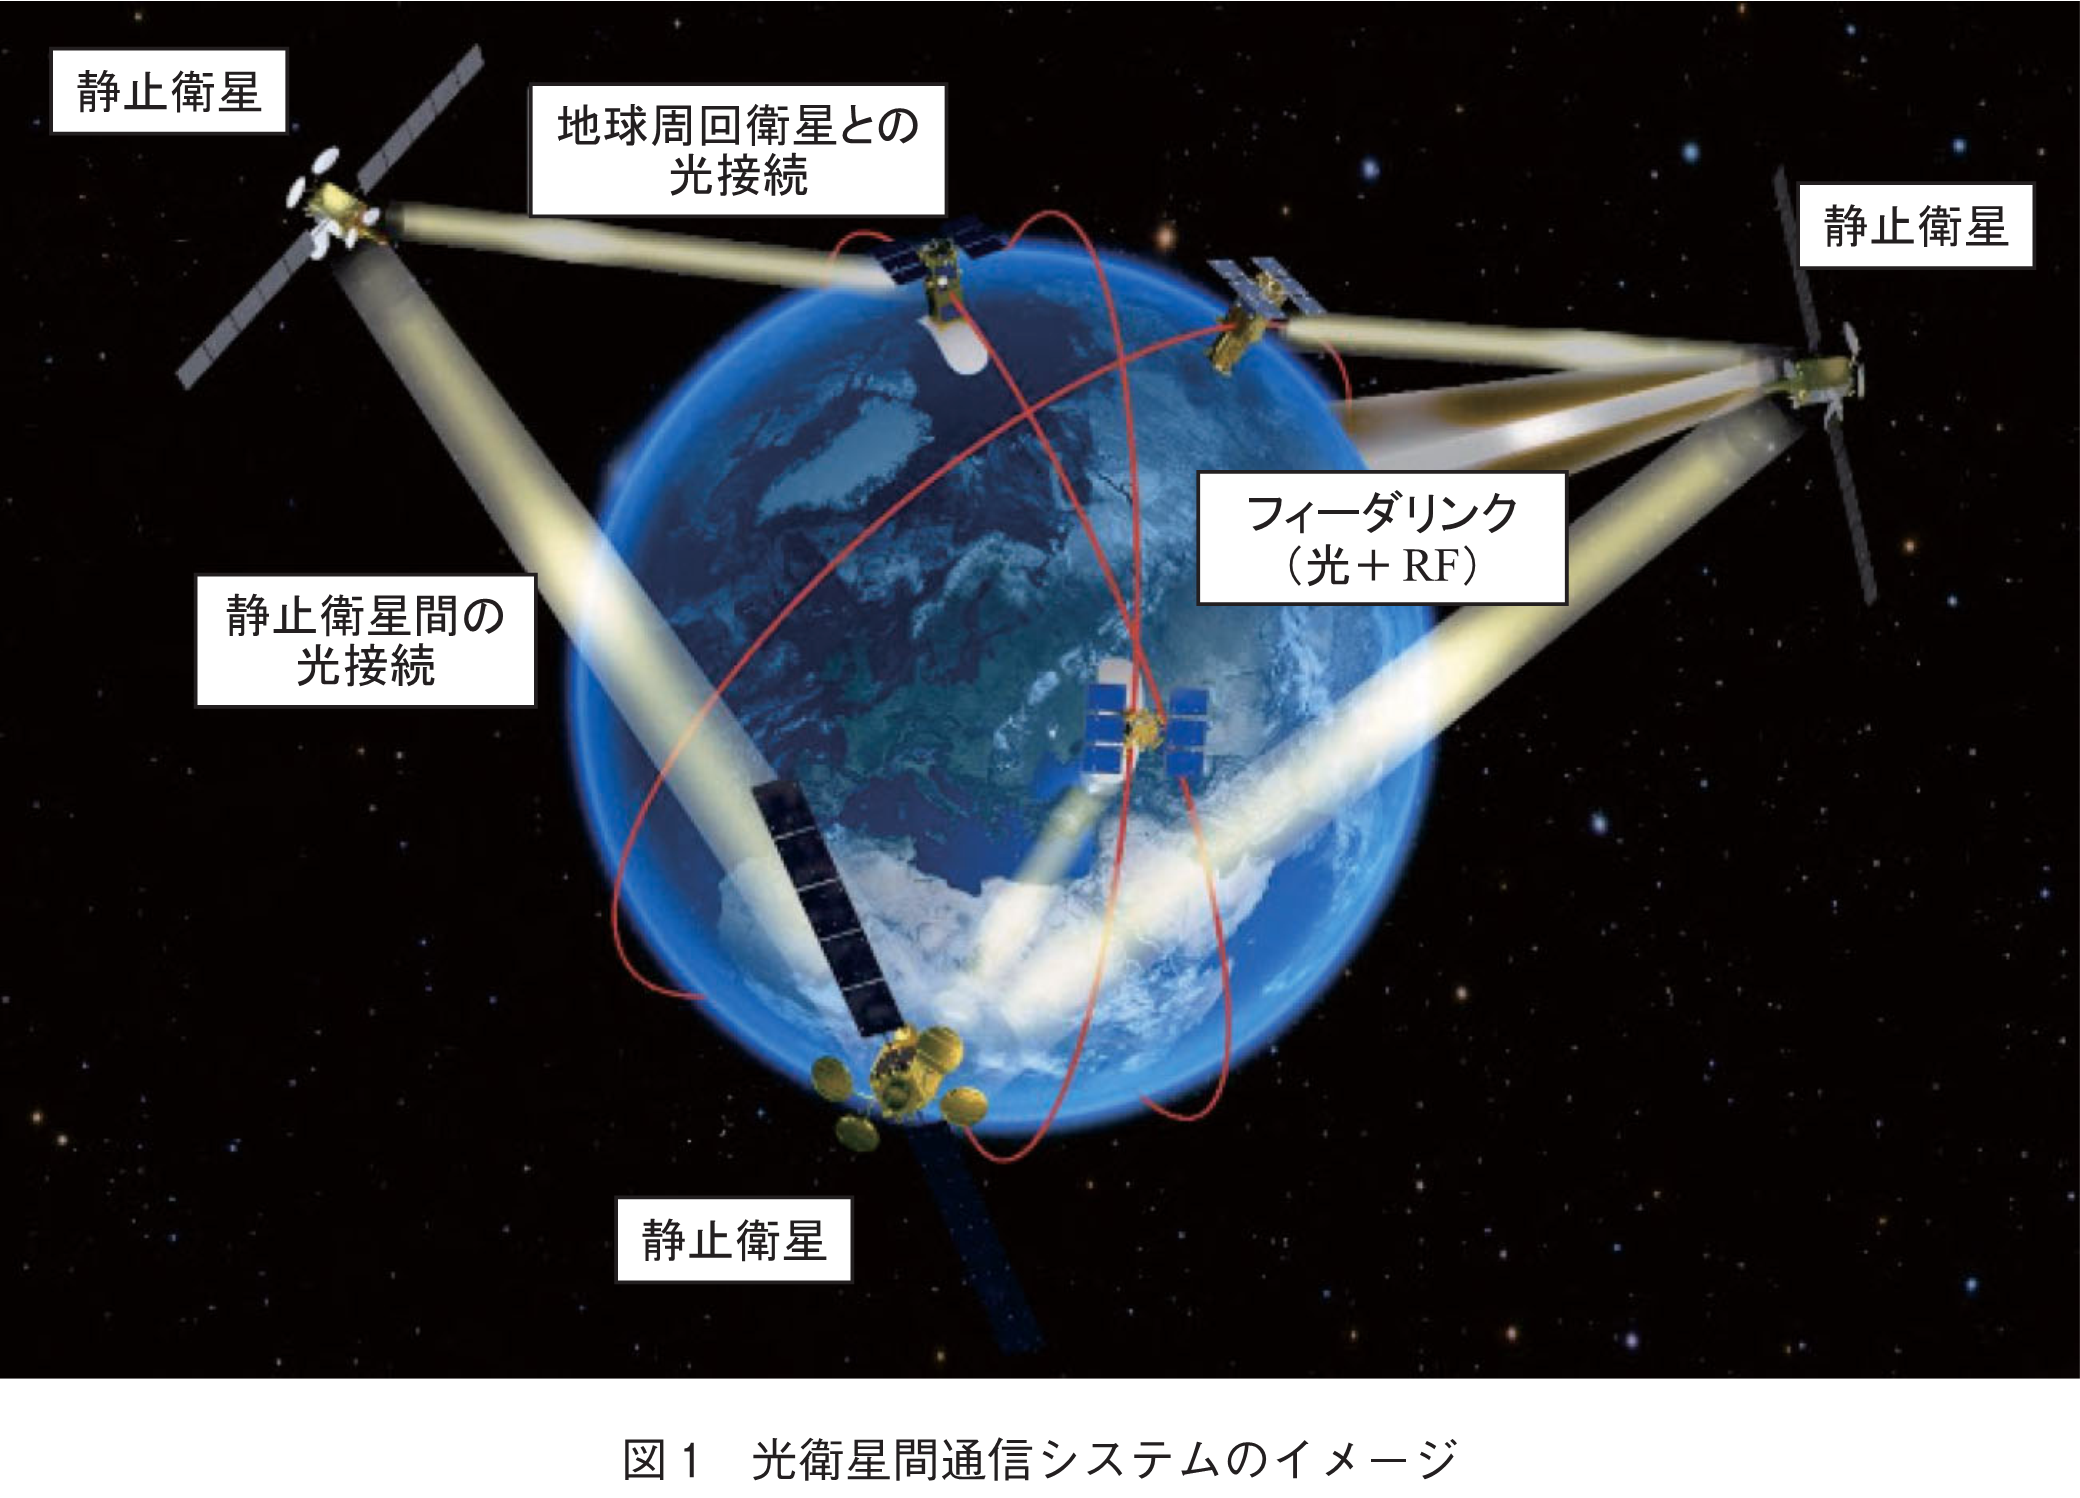 ニュース解説 4万km離れた人工衛星と地上局の間で光通信回線を確立